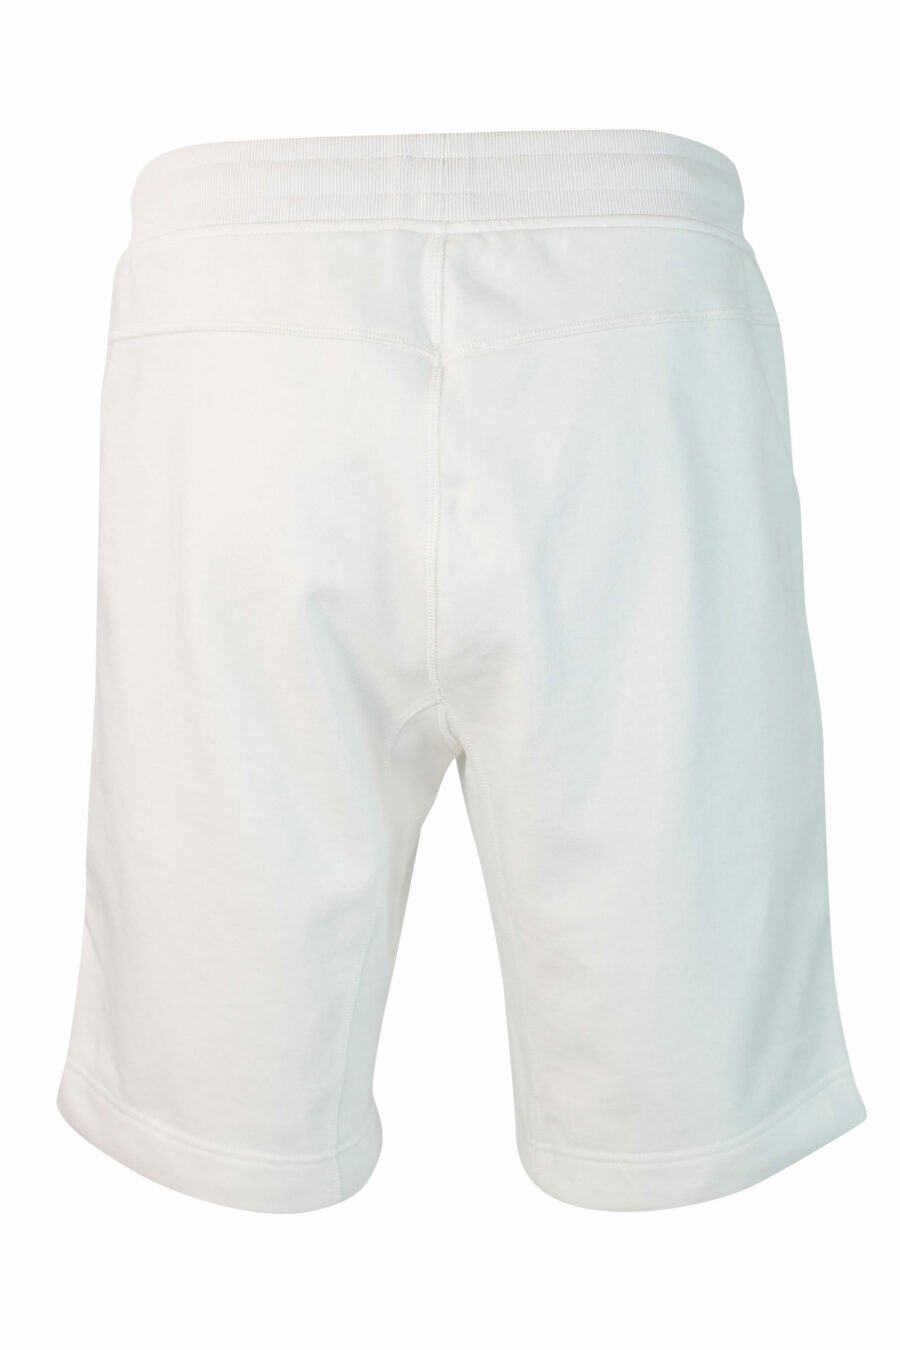 Pantalón de chándal corto blanco - IMG 9870